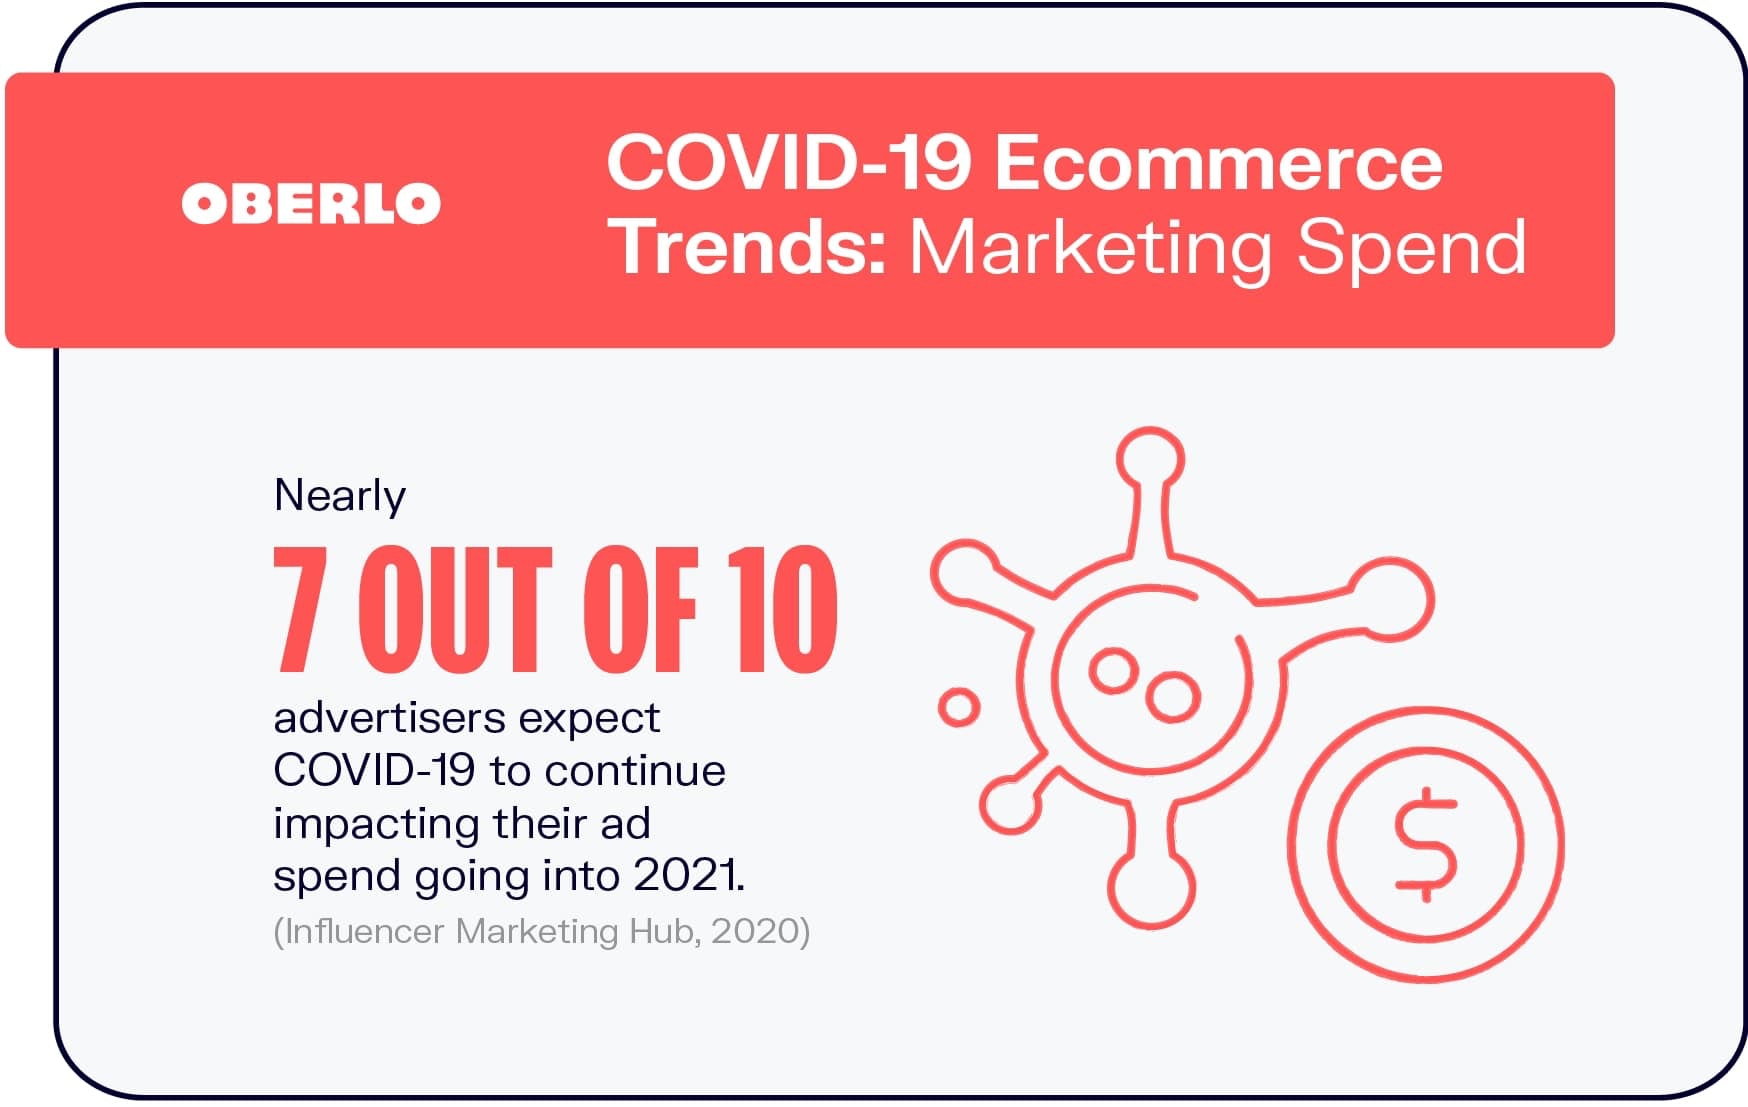 Tendencias de comercio electrónico de COVID-19: gasto en marketing